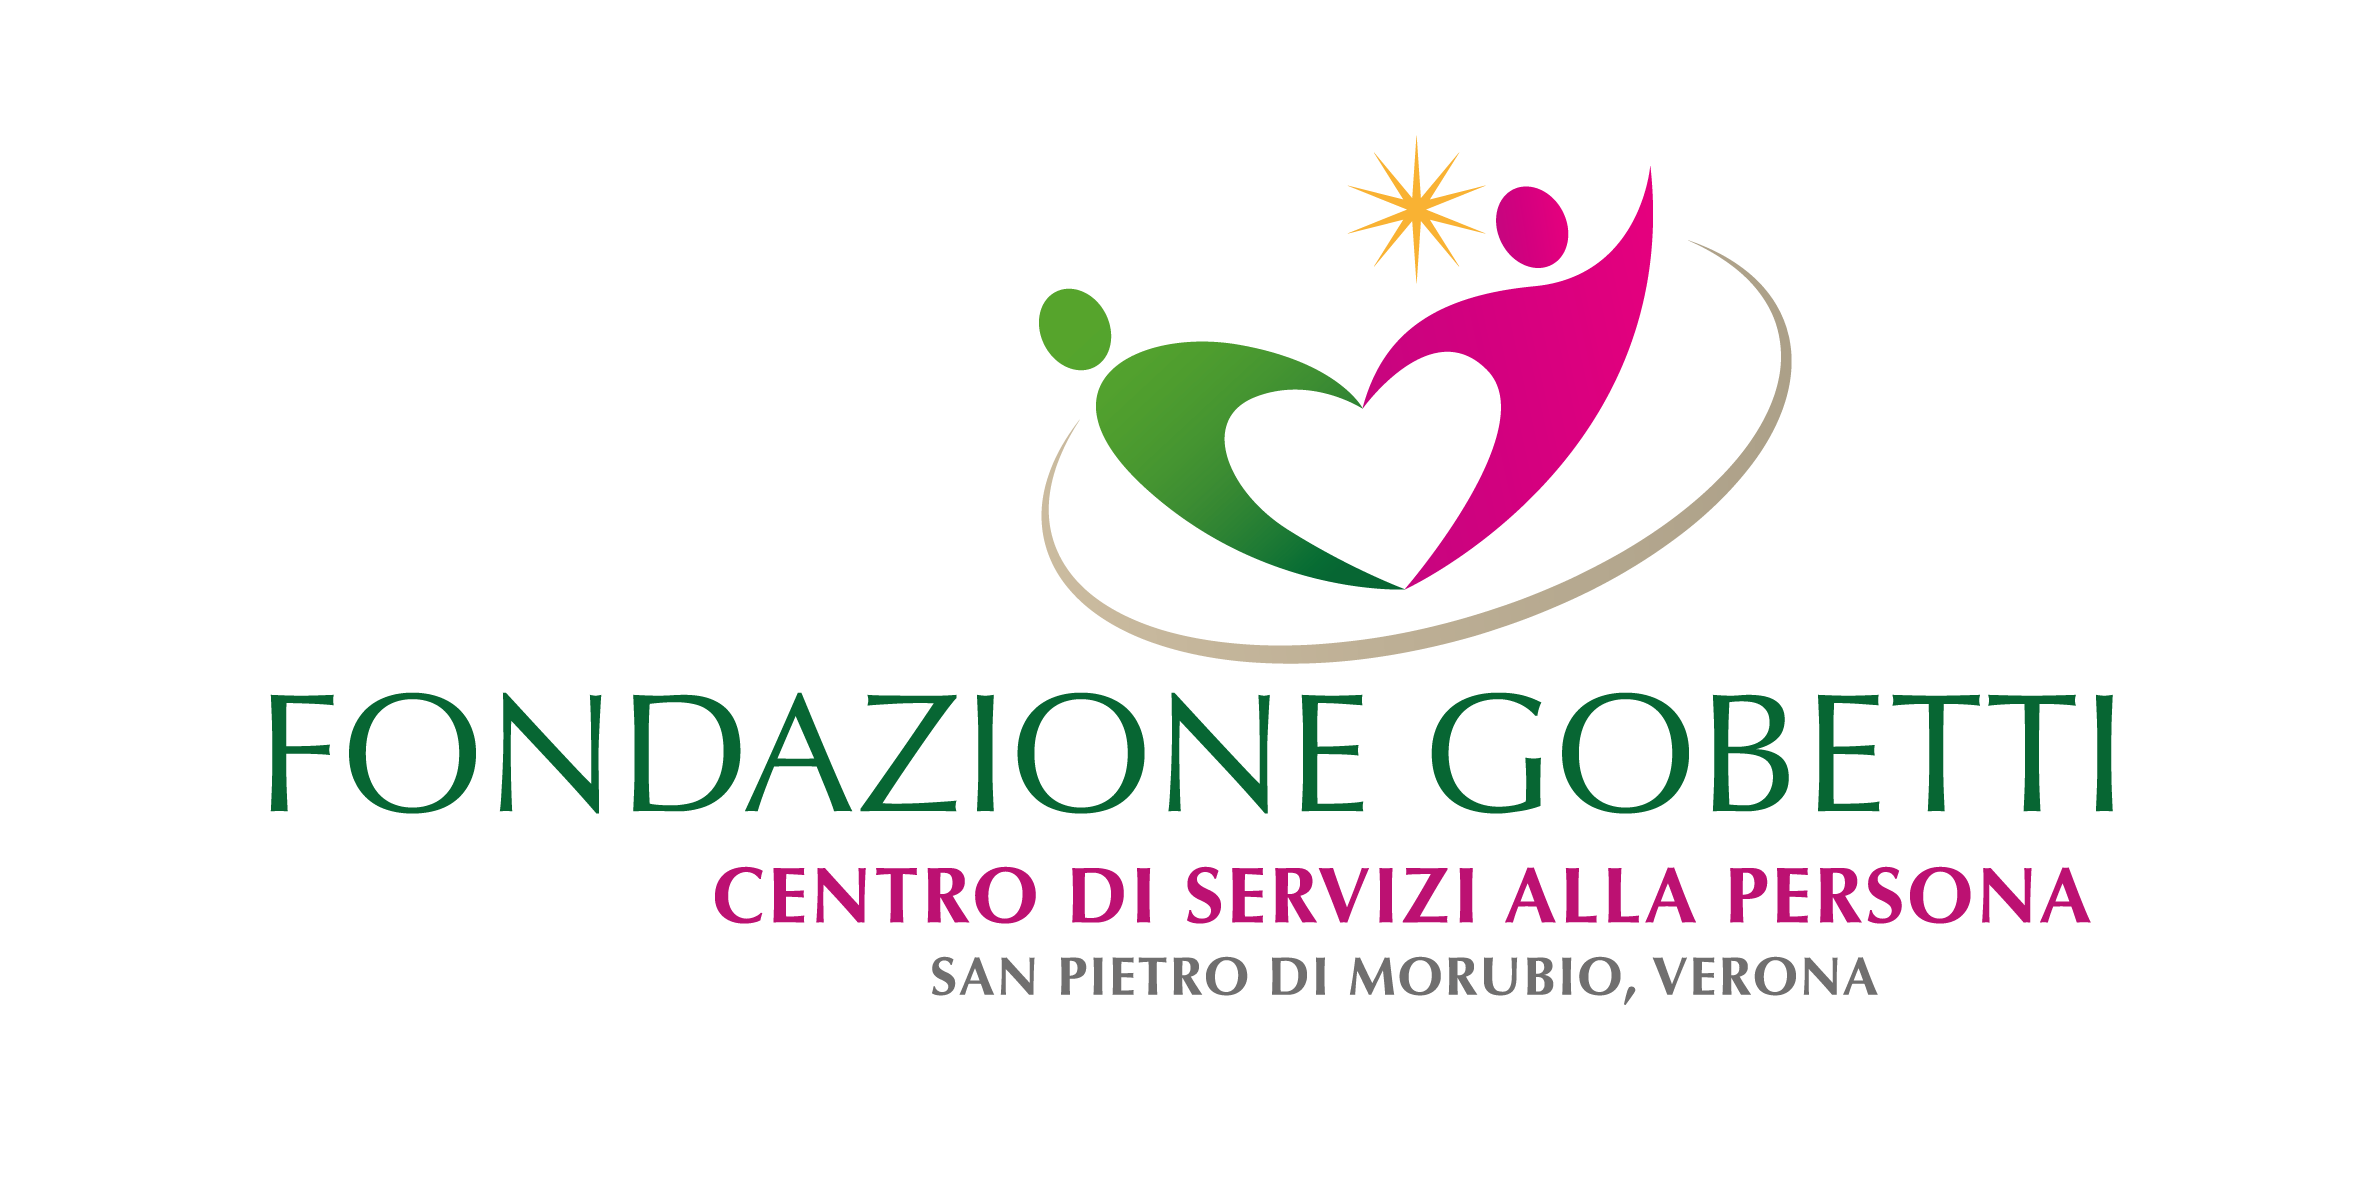 Fondazione-gobetti-logo-01